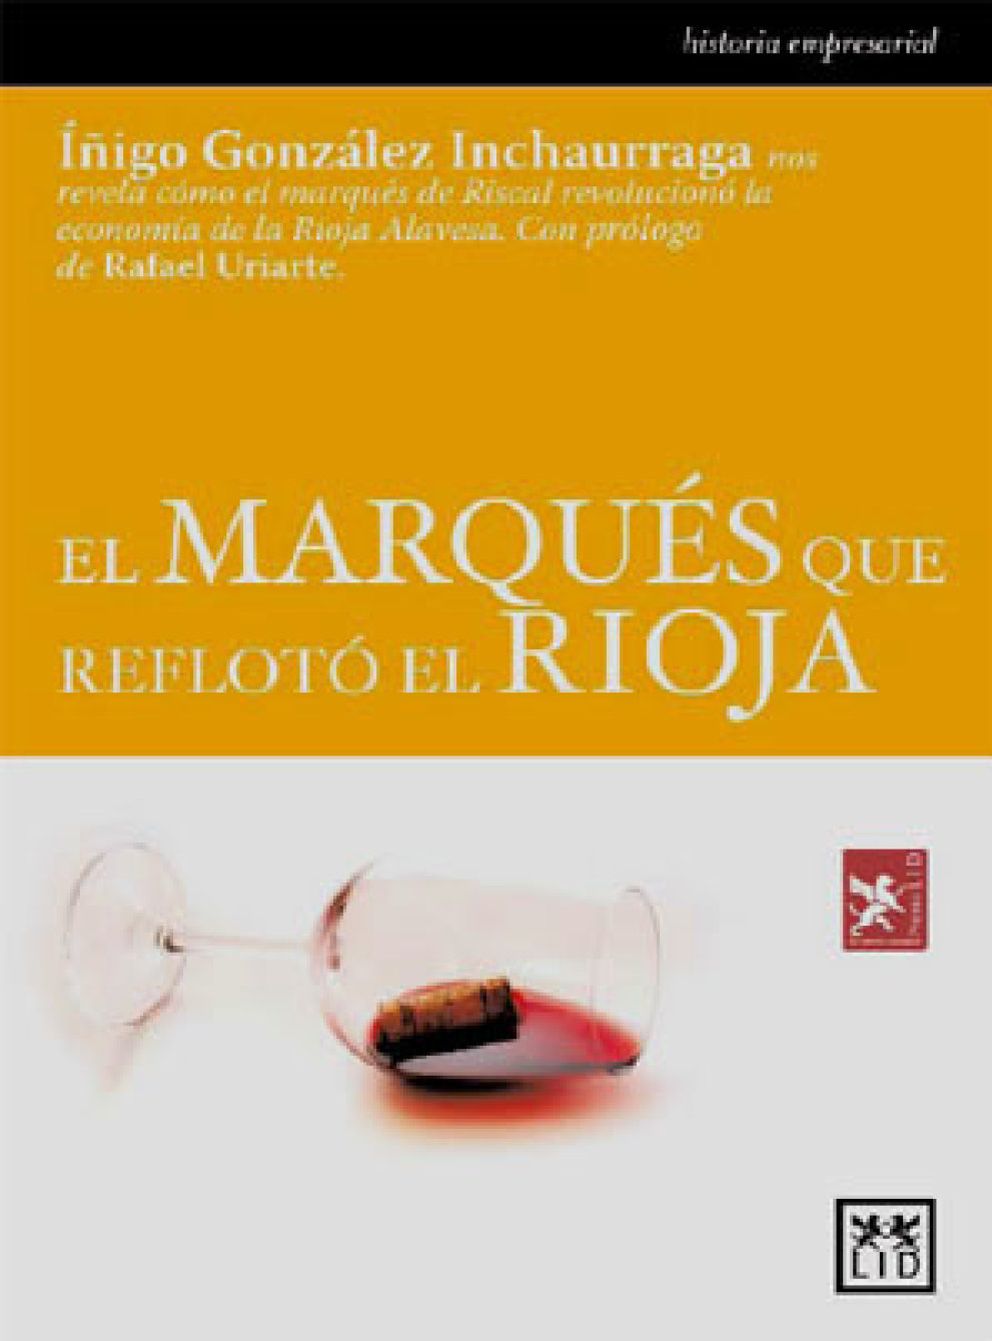 Foto: Un libro analiza las decisiones empresariales de los Herederos del Marqués de Riscal